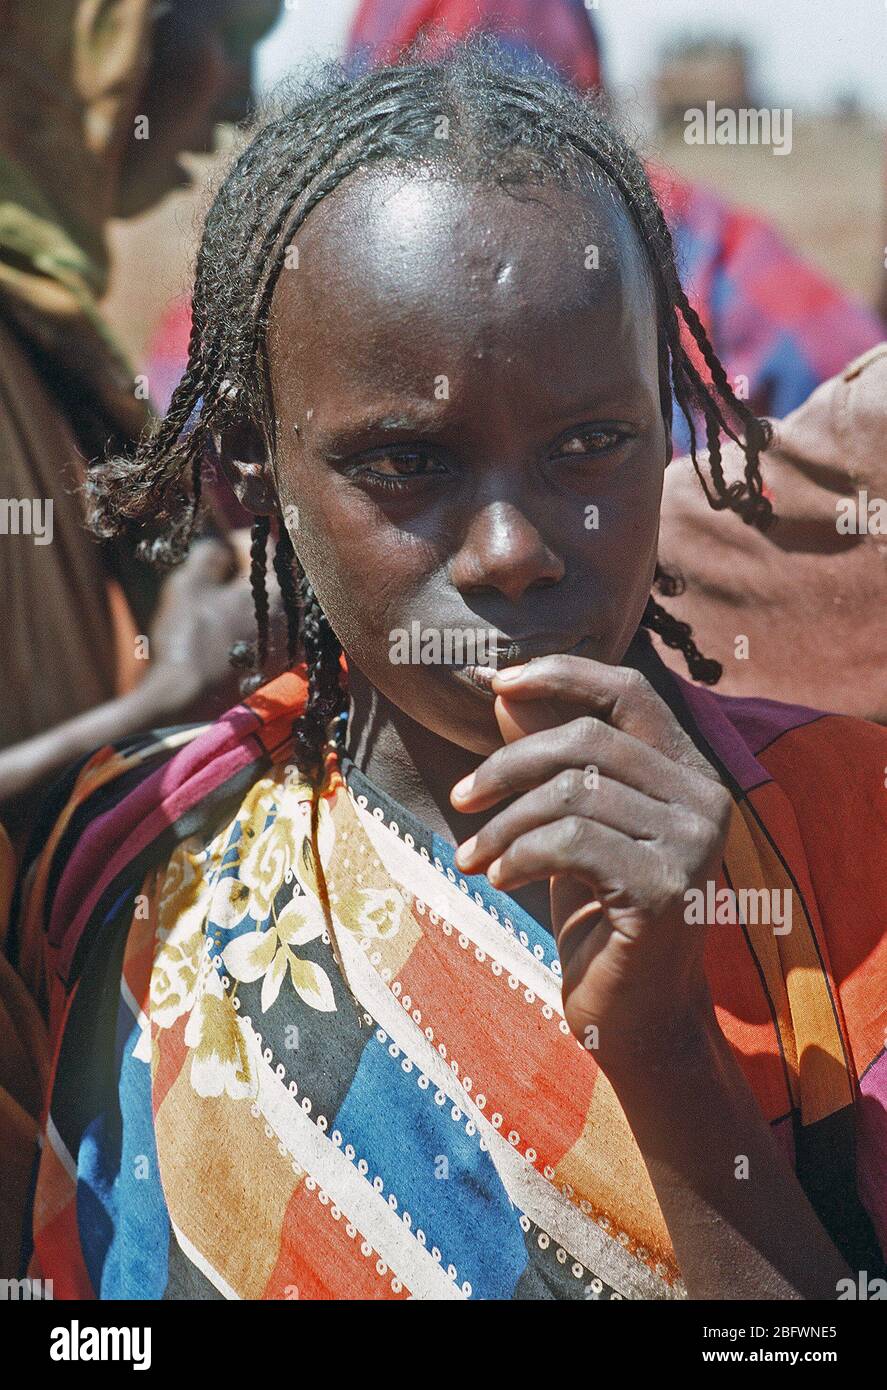 1993 - una ragazza somala orologi personale degli Stati Uniti durante la multinazionale soccorsi Restore Hope. Foto Stock